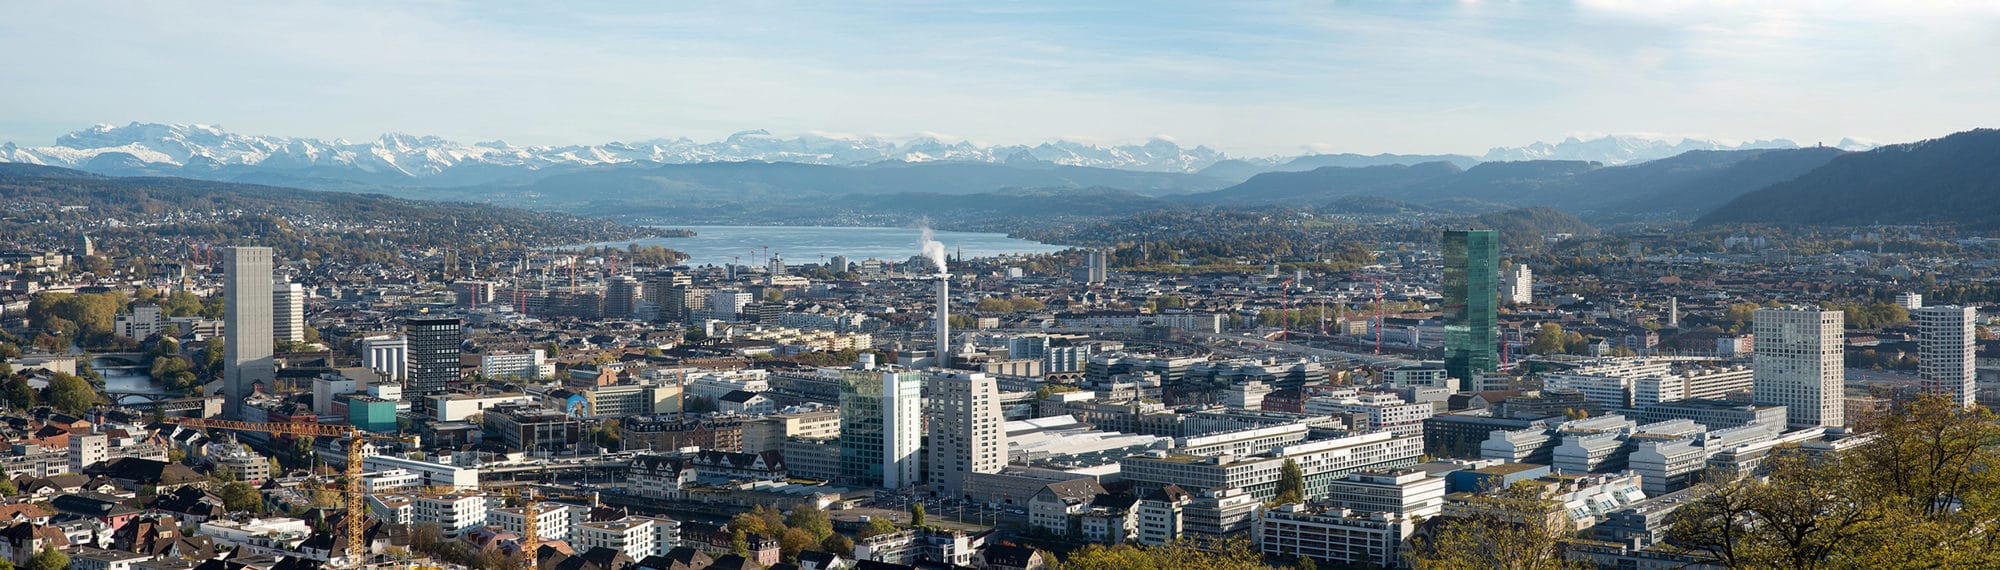 © Amt für Städtebau Zürich, Juliet Haller